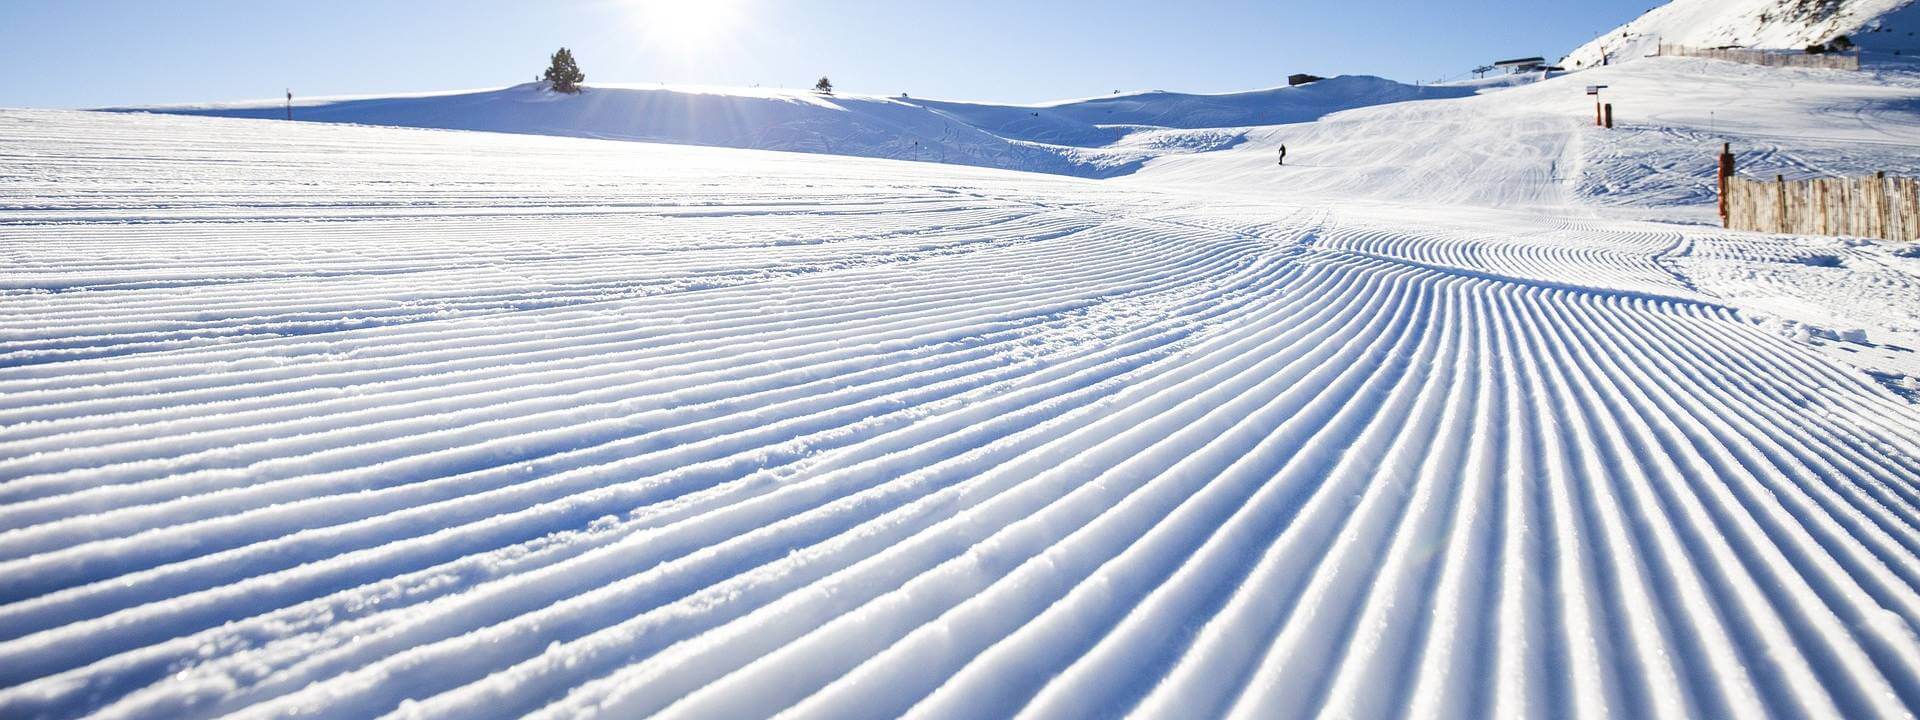 Pista de esquí en Grandvalira recién pisada